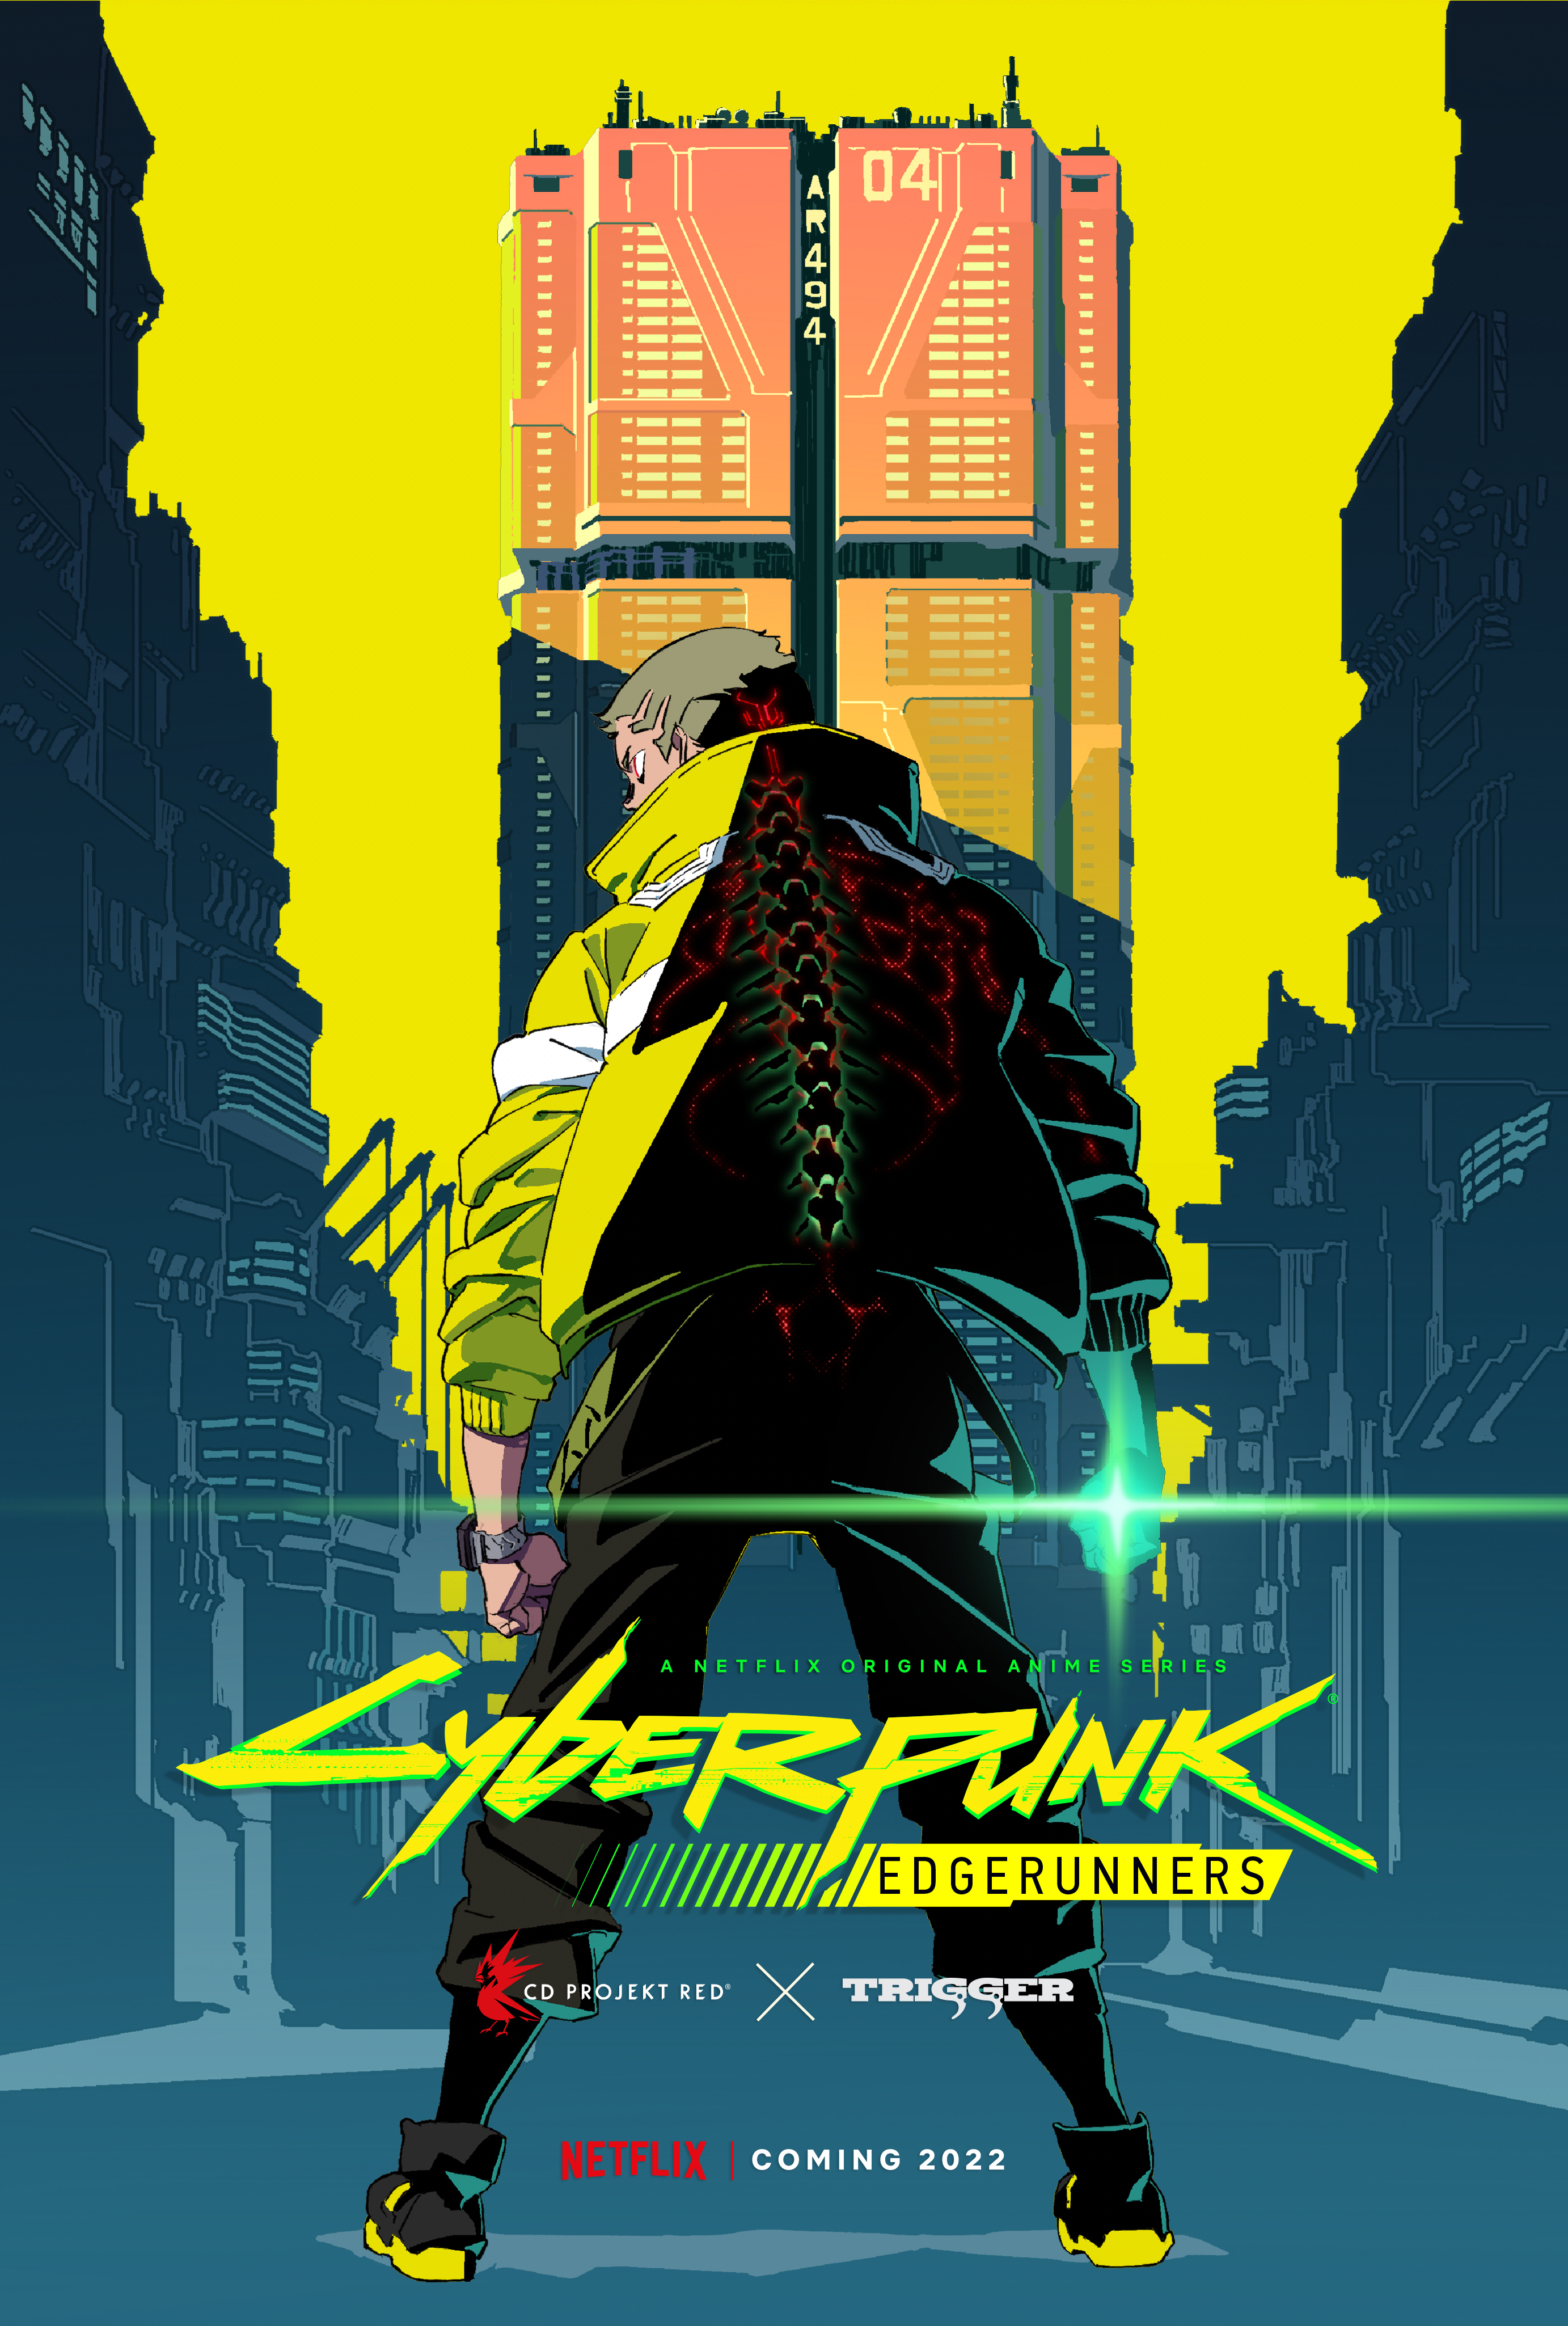 A atualização Edgerunners une Cyberpunk 2077 e Cyberpunk: Edgerunners –  PlayStation.Blog BR